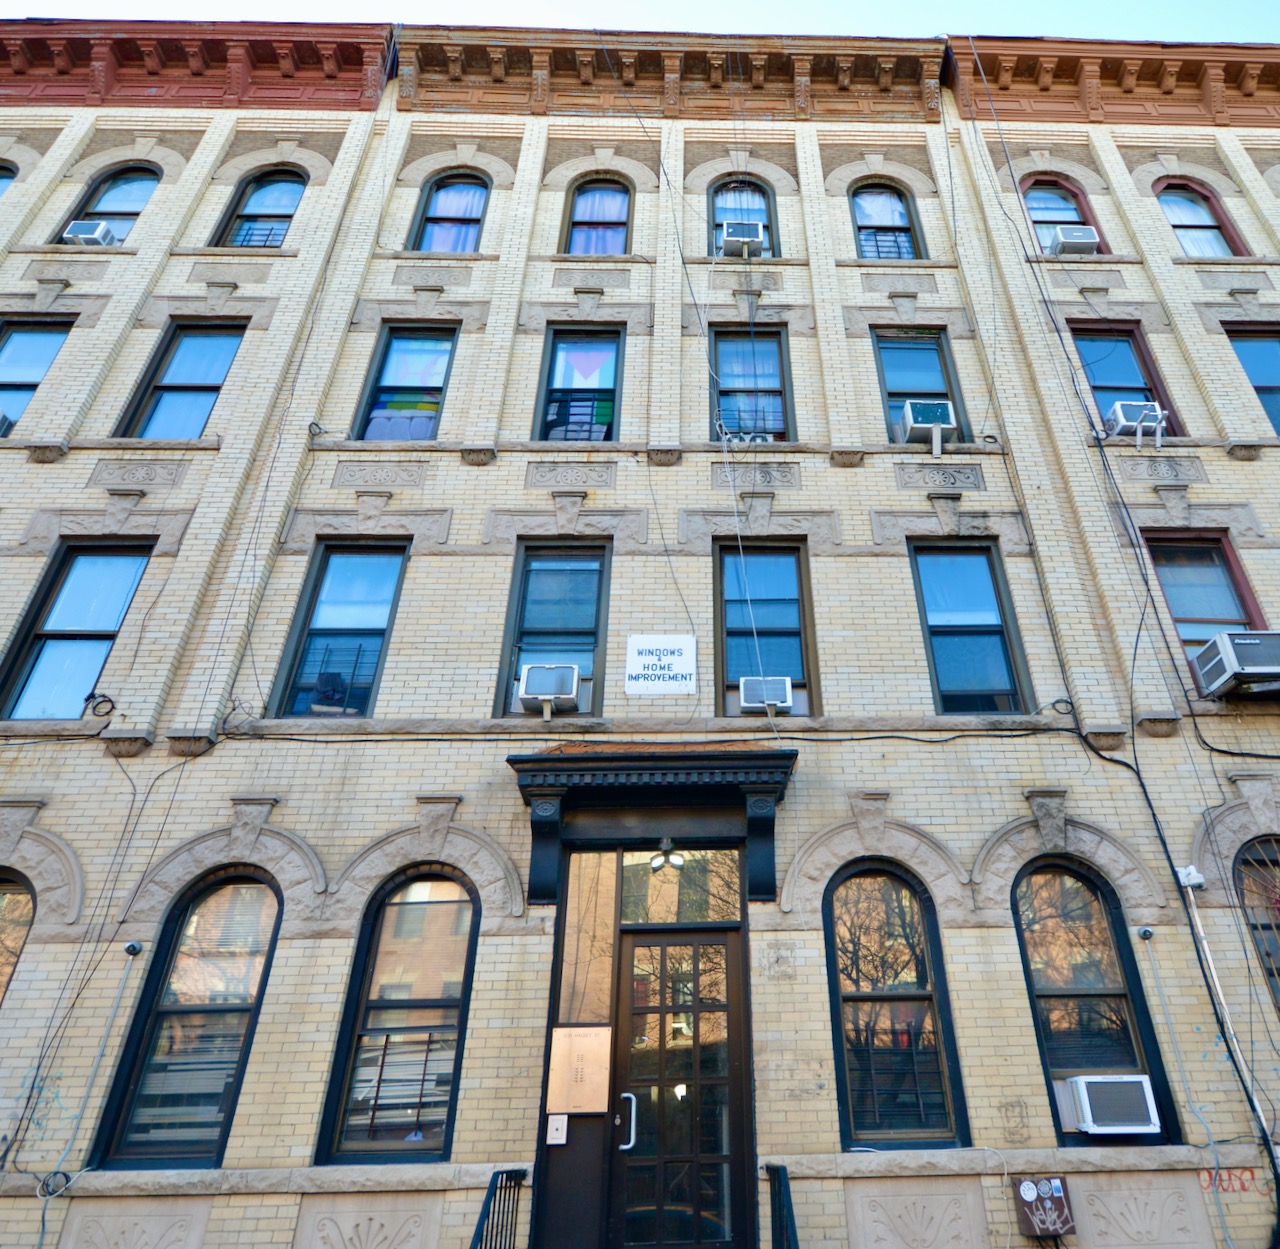 1231 Halsey Street Building, Bedford Stuyvesant, Brooklyn, New York - 16 Bedrooms  
8 Bathrooms  
34 Rooms - 